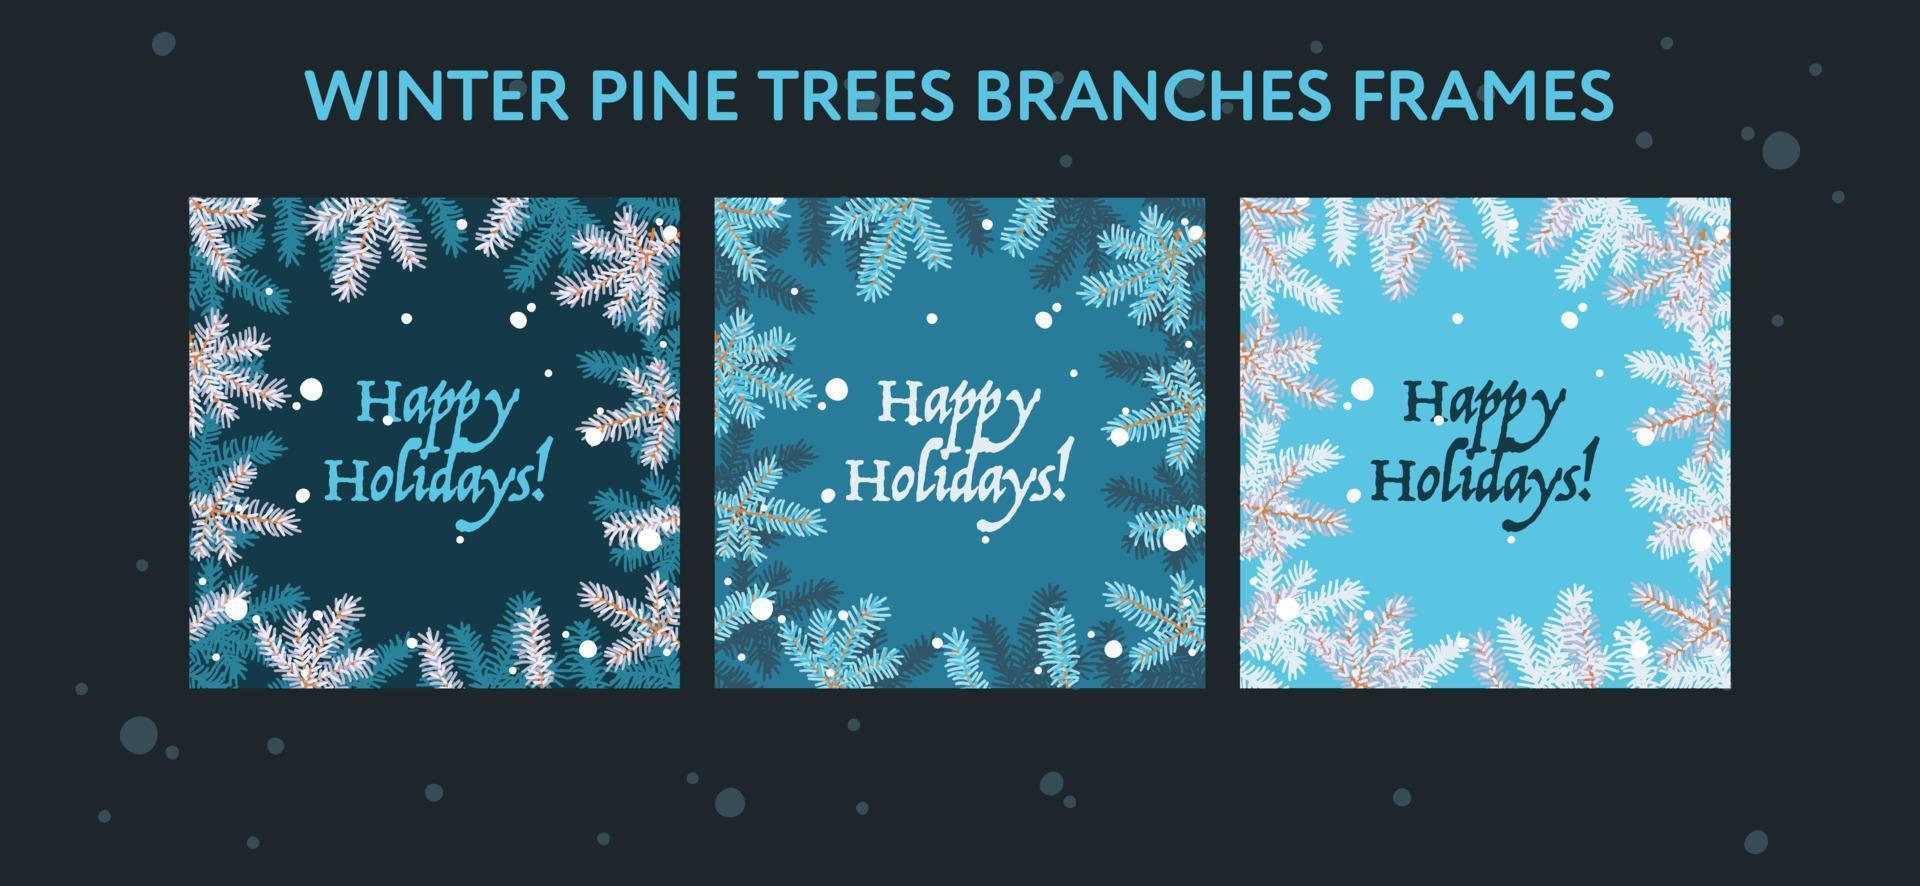 conjunto de quadros de férias de natal com texto de boas festas, vetor eps. conjunto de cartazes criativos mostrando galhos de pinheiros em fundos azuis.